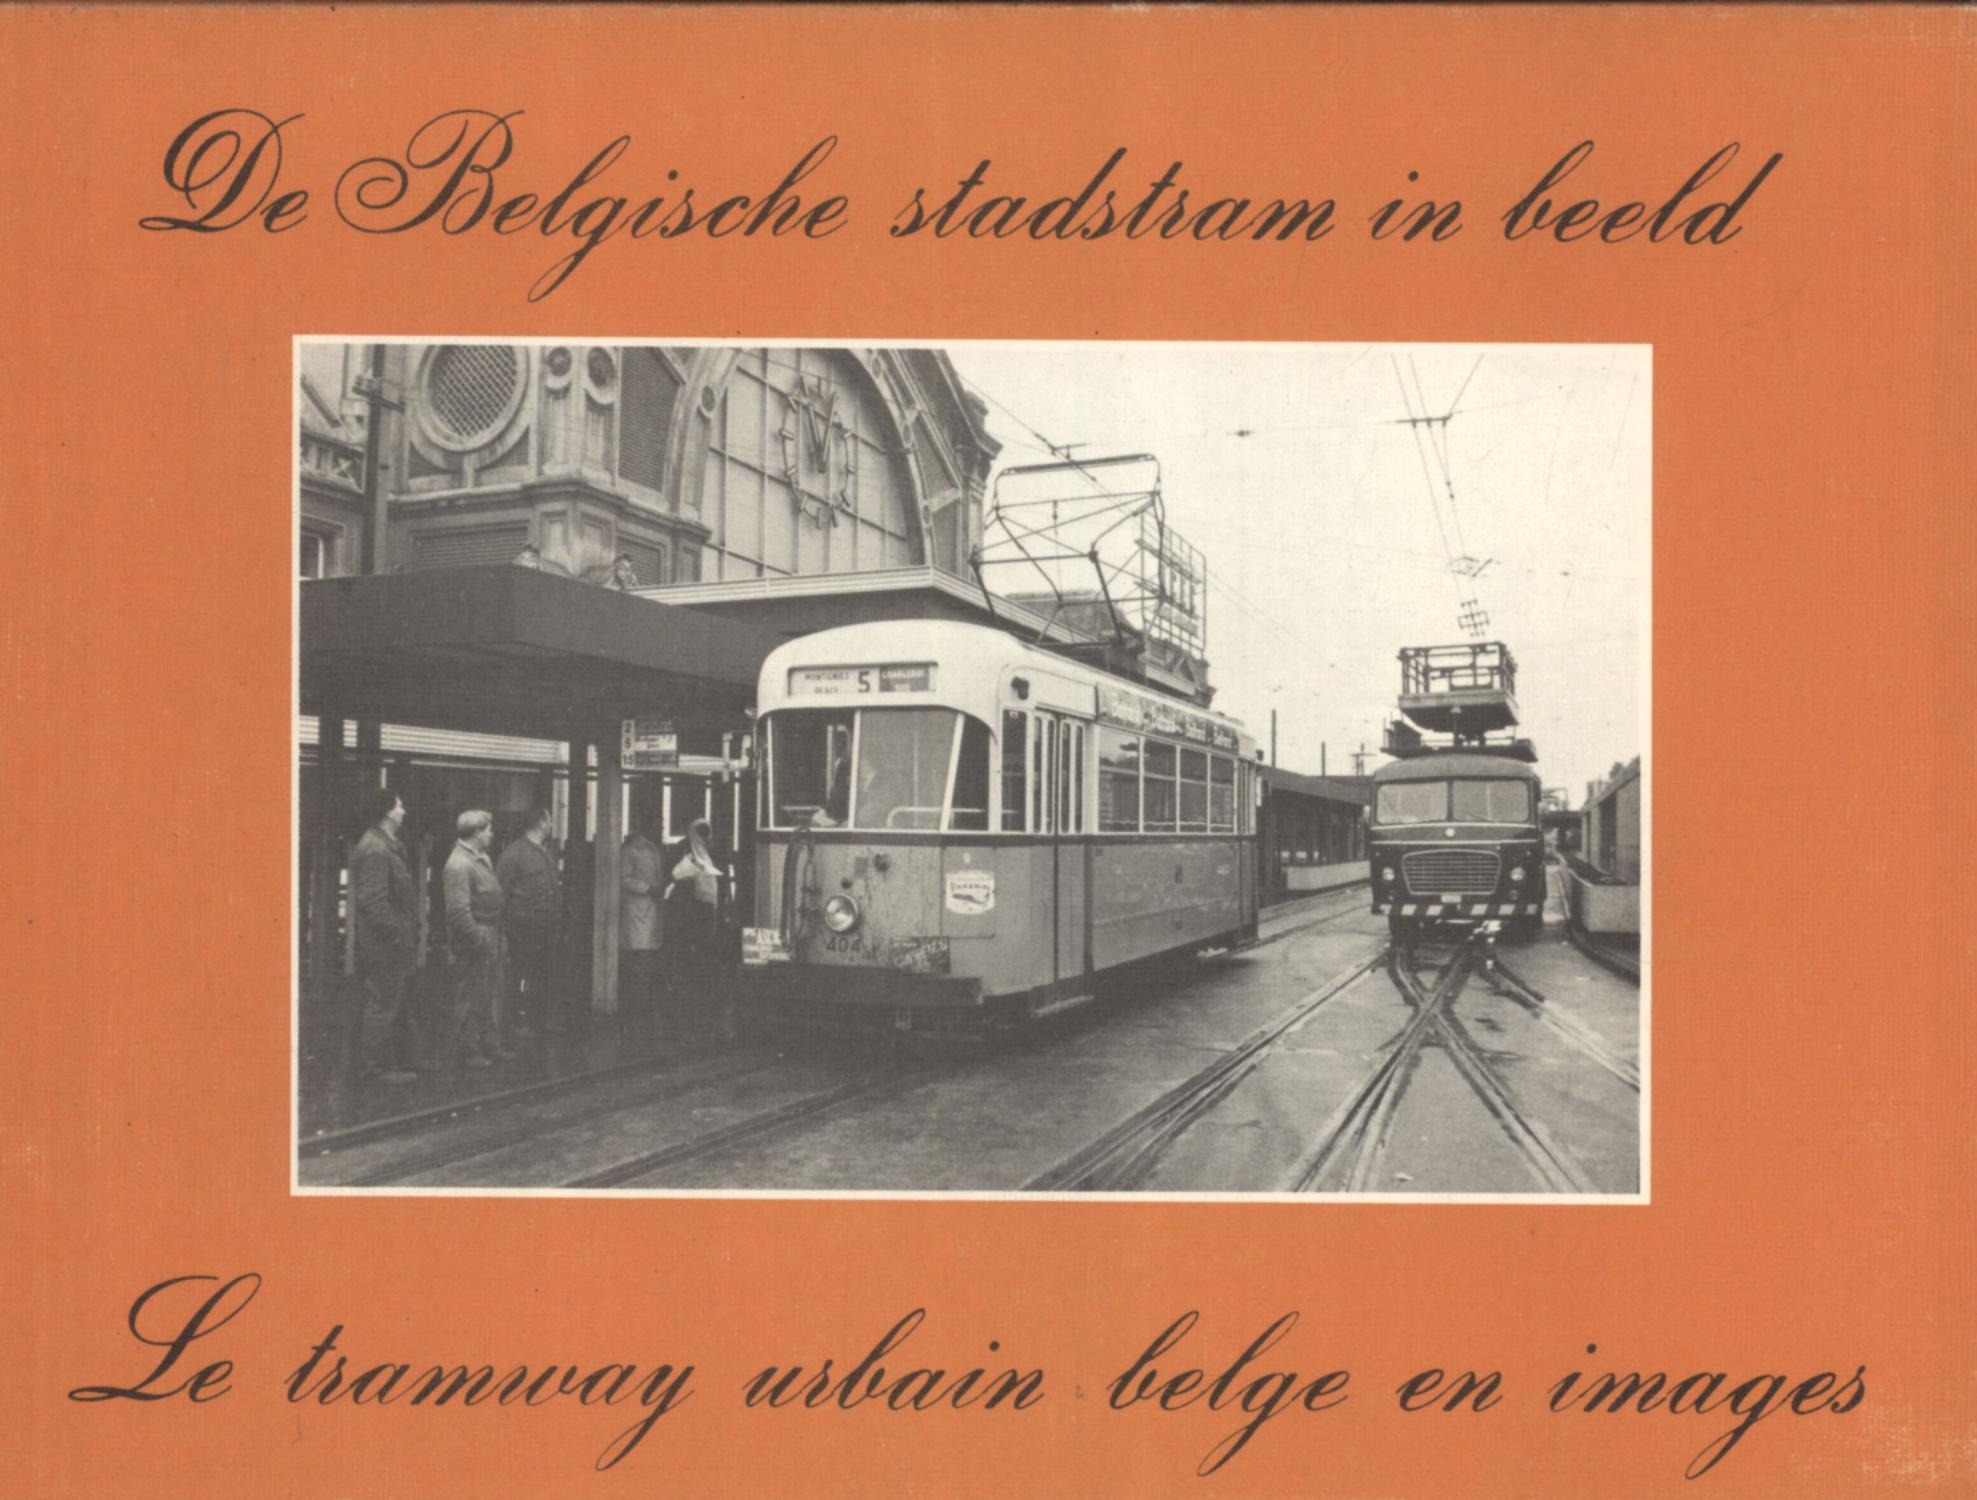 De Belgische Stadstram in Beeld = Le Tramway Urbain Belge en Images - André ver Elst